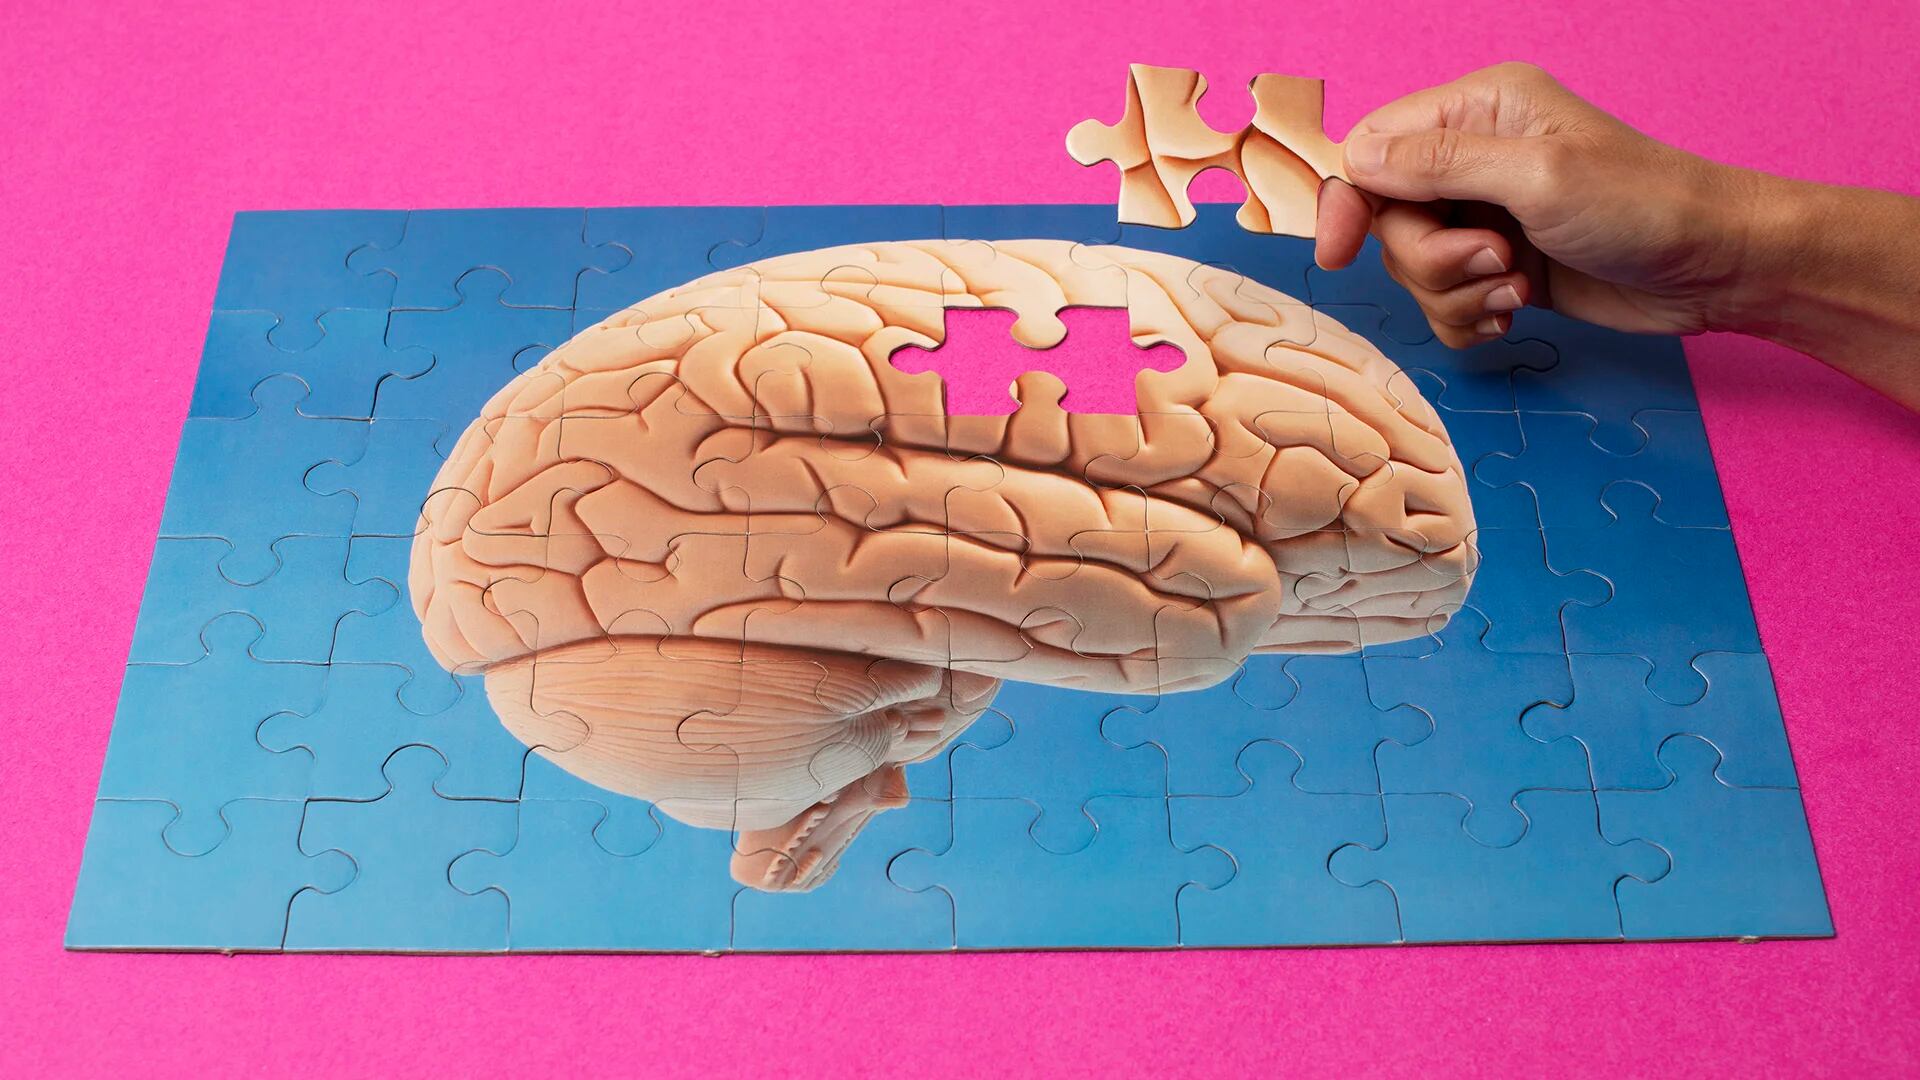 Es difícil de descubrir el inicio de la enfermedad de Alzheimer en las primeras etapas, porque los síntomas pueden confundirse con problemas de memoria, típicos de la edad avanzada (Getty Images)